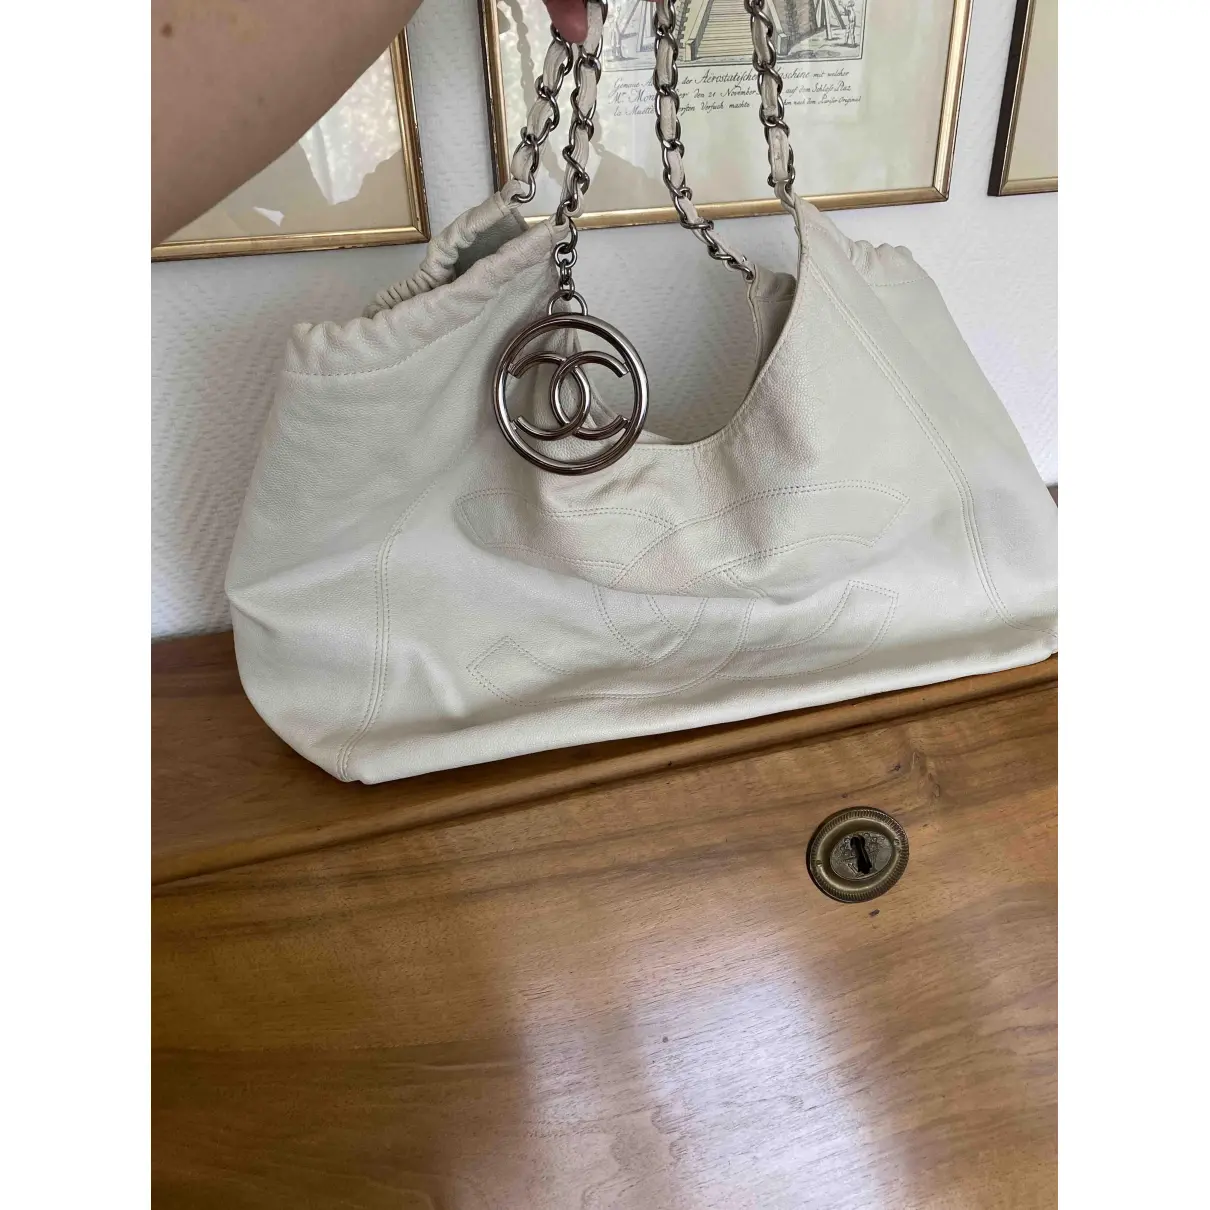 Buy Chanel Coco Cabas leather handbag online